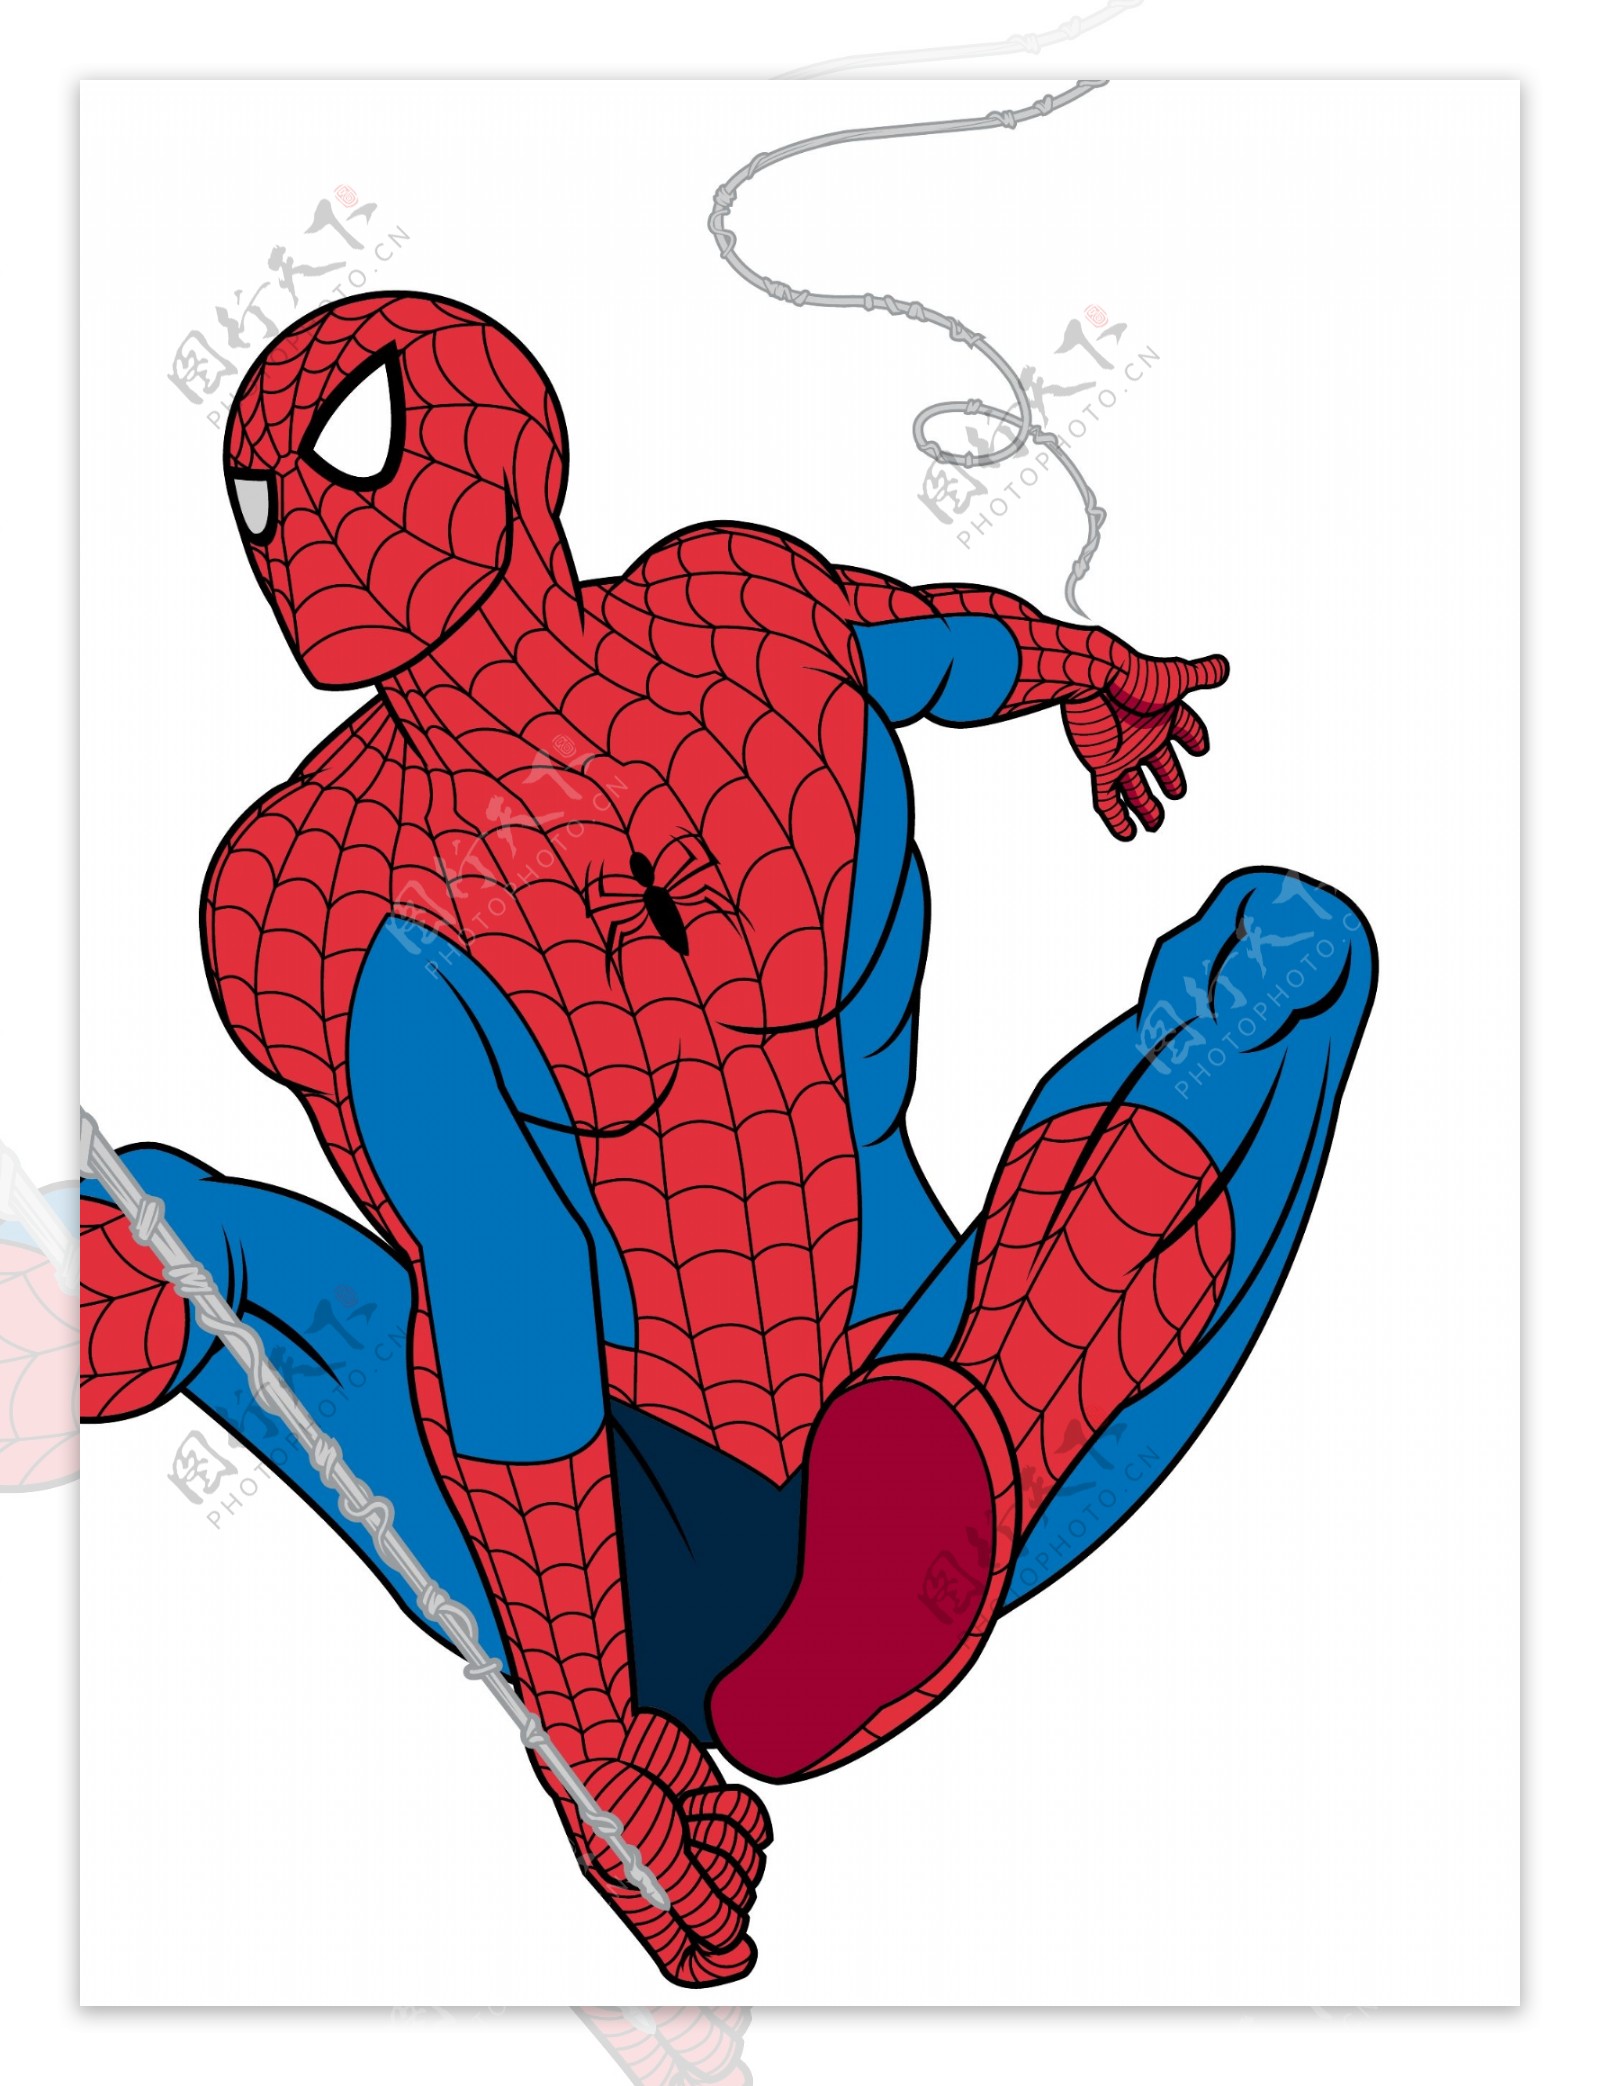 海报设计，合成漫威超级英雄蜘蛛侠海报 - 海报设计 - PS教程自学网